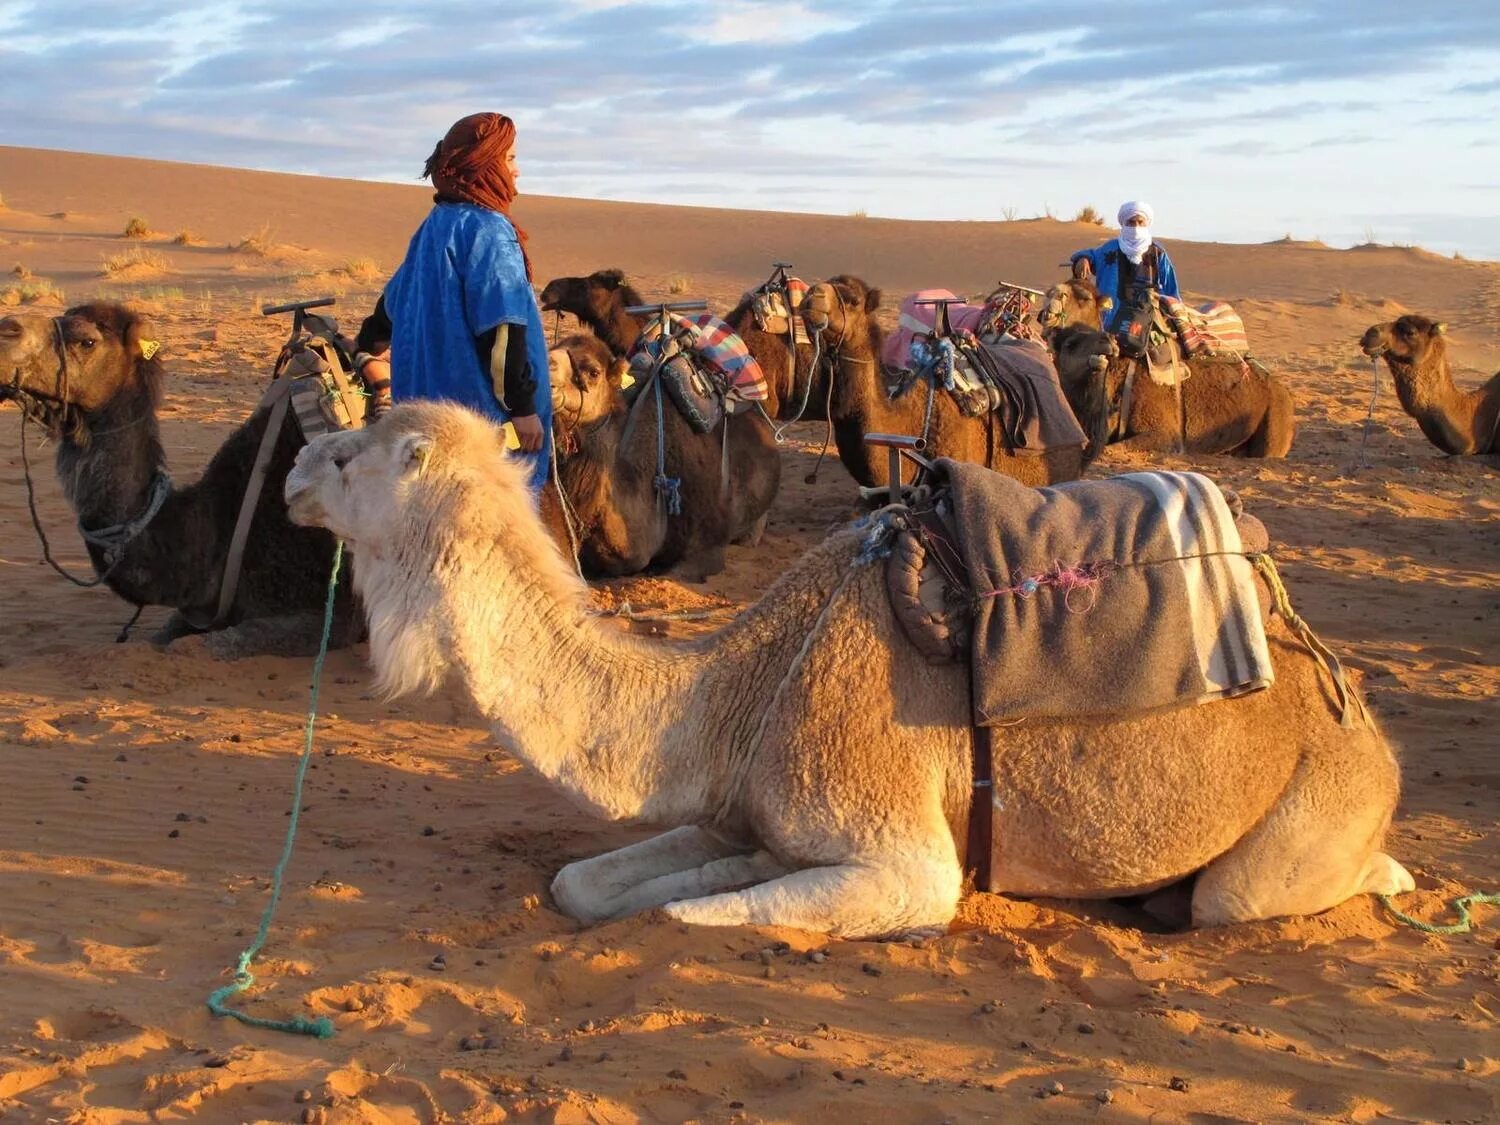 Караван отдых. Бедуины Марокко. Караван в пустыне Каракум. Караваны верблюдов с бедуинами. Караван марокканских верблюдов дромедаров.